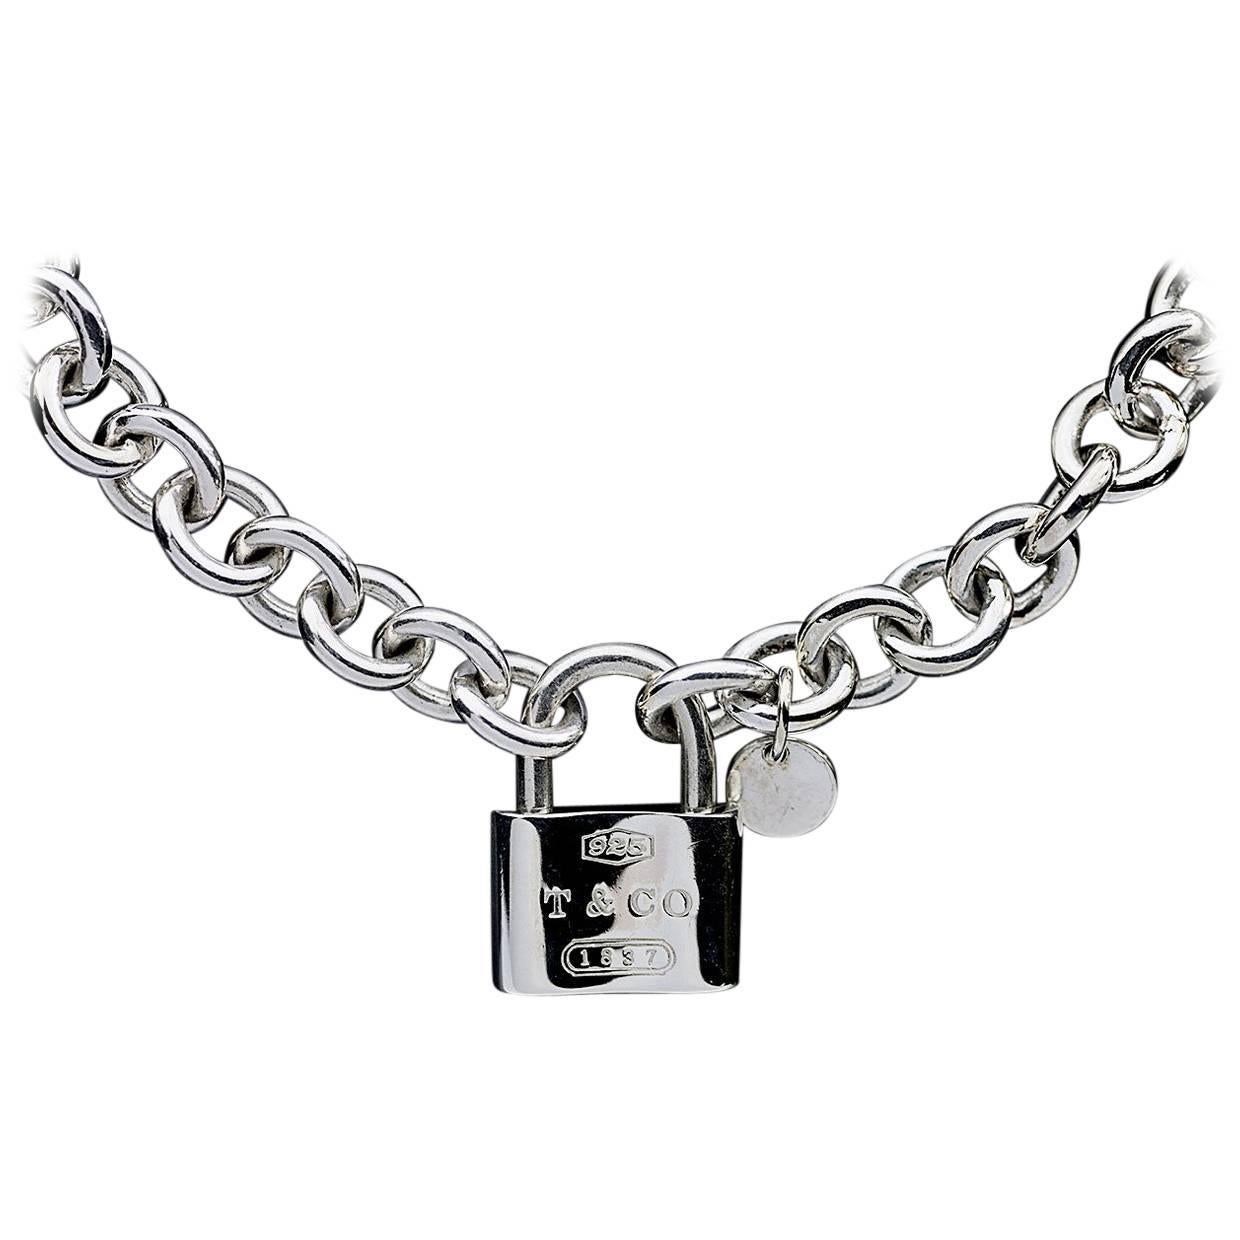 tiffany & co padlock necklace